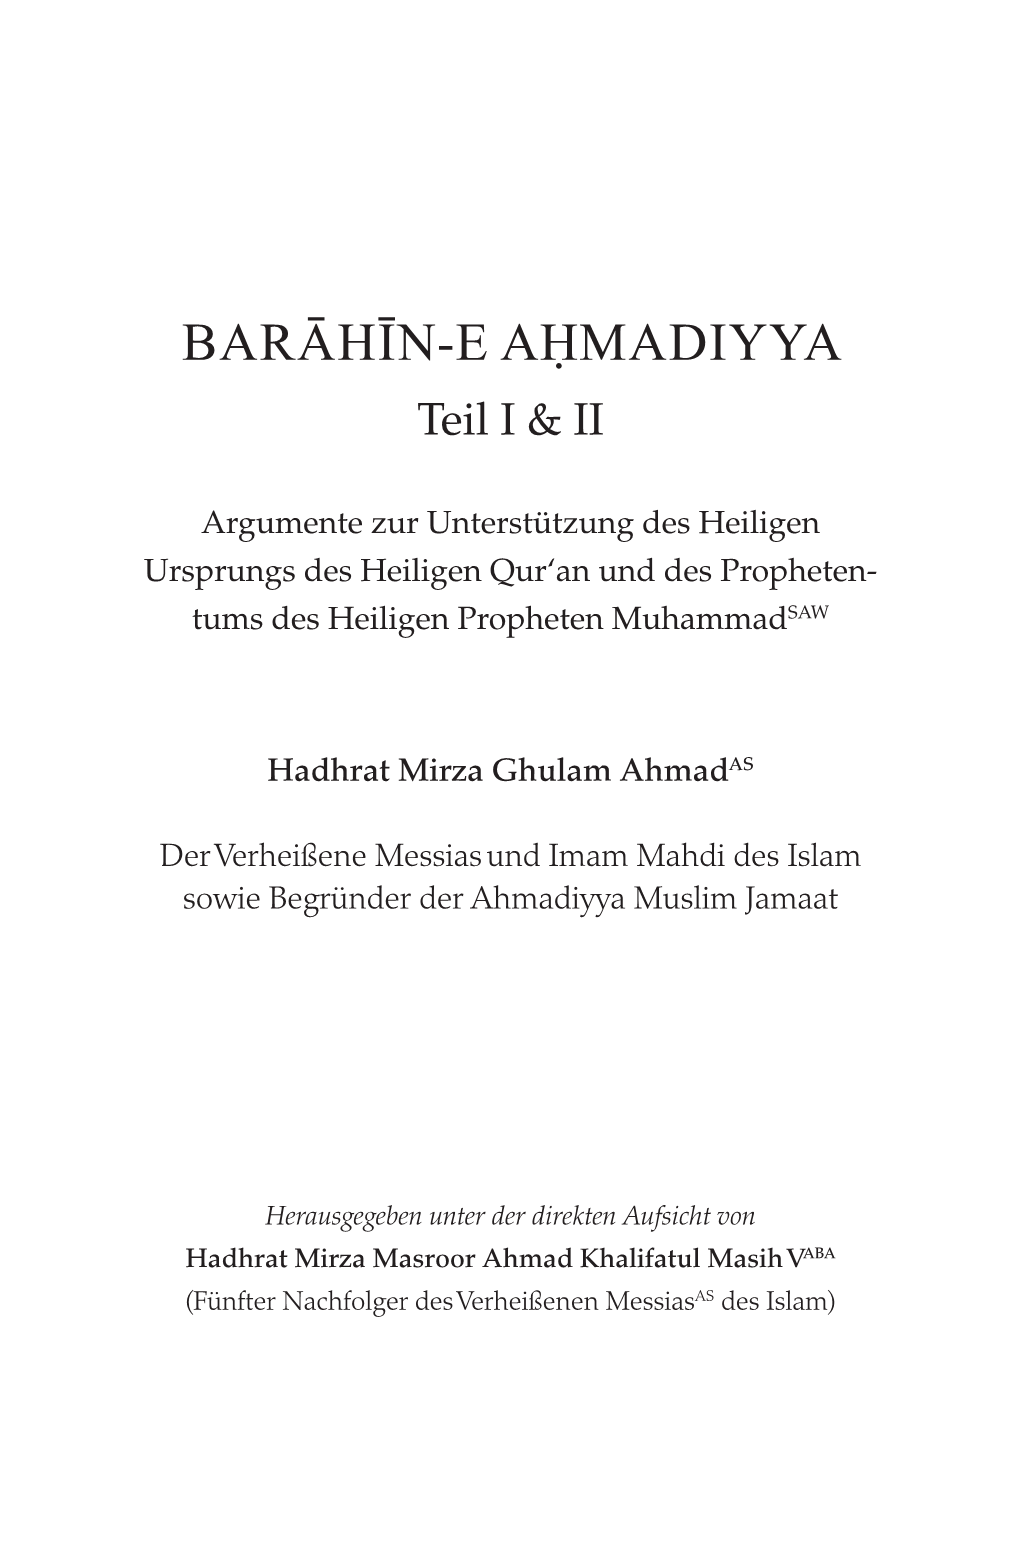 Barahin-E-Ahmadiyya Teil I & II